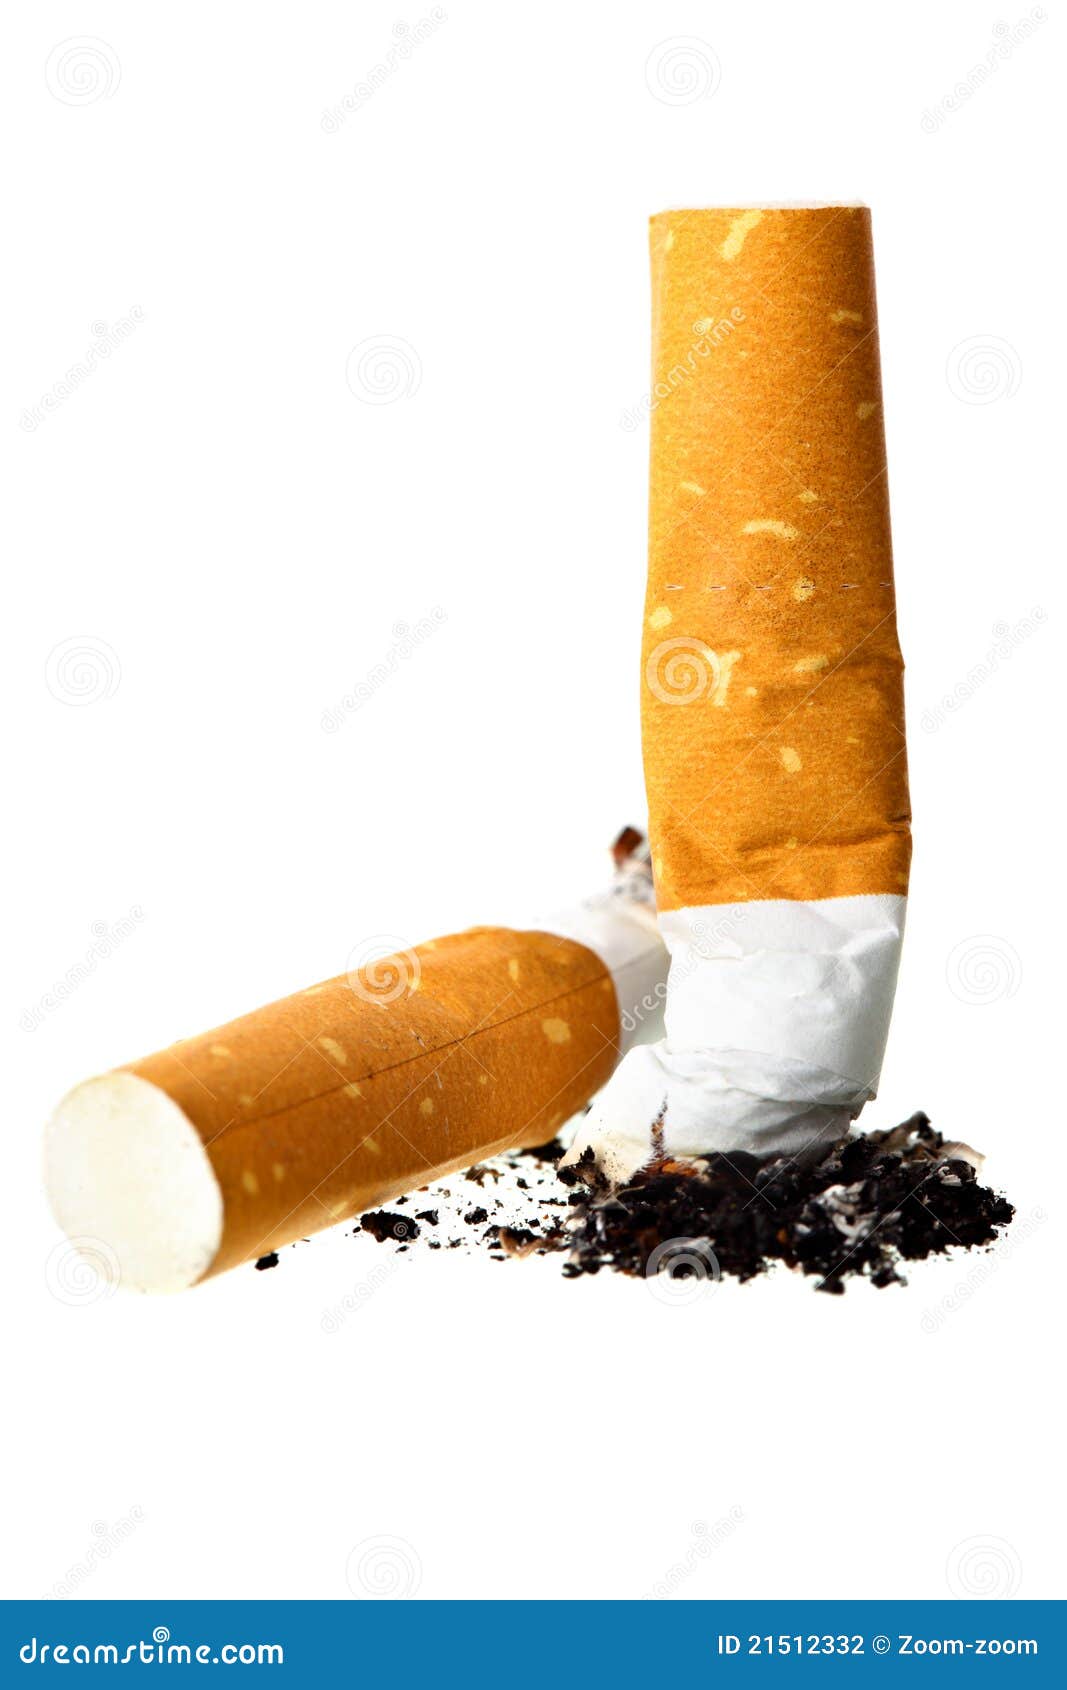 Smoking Teen Has A Smoking Booty Ass